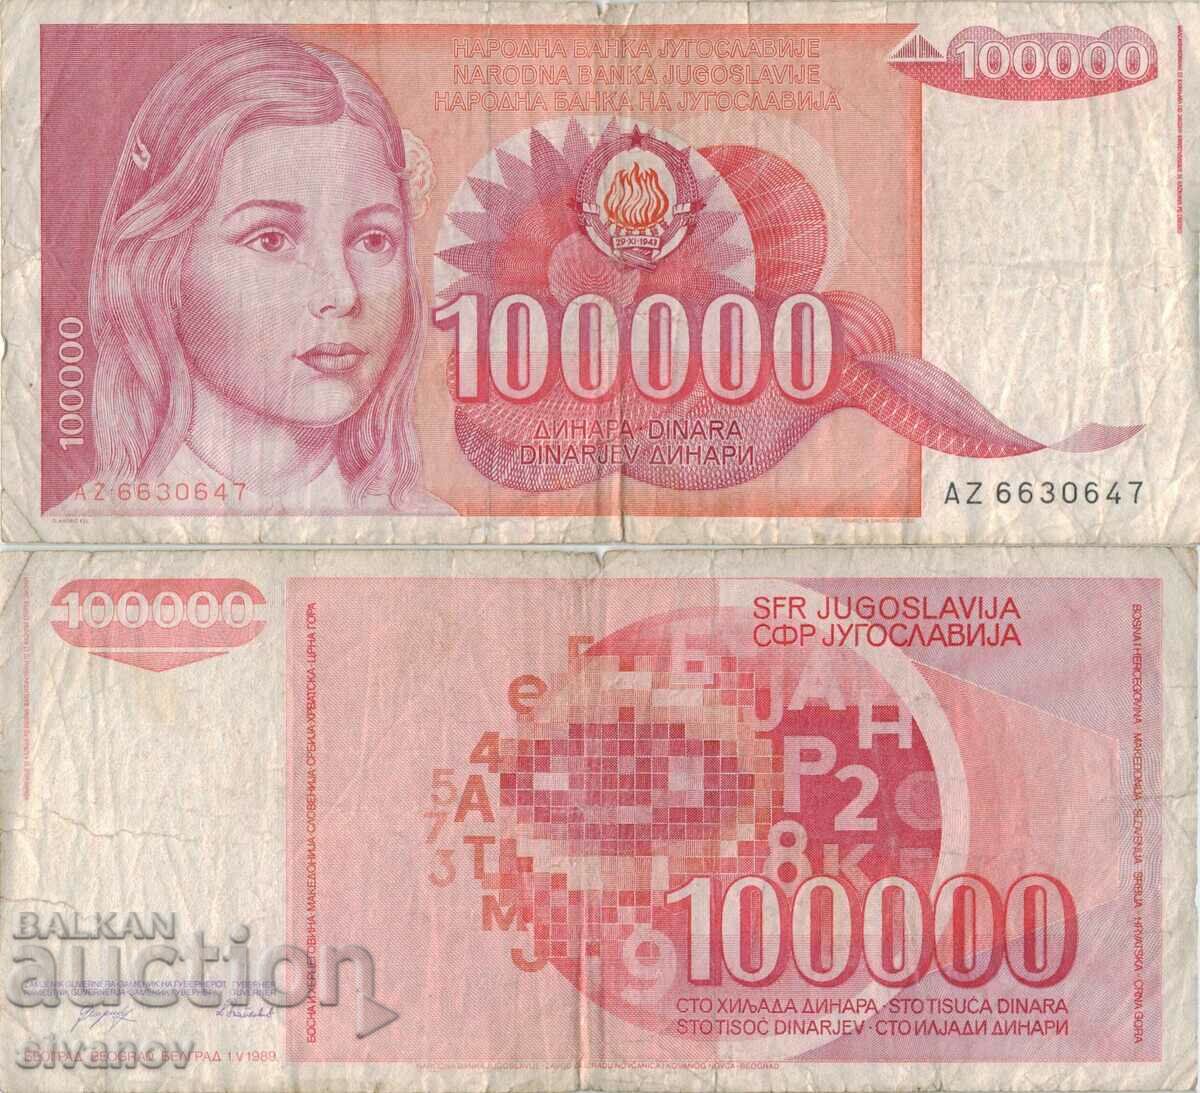 Yugoslavia 100,000 dinars 1989 #5063